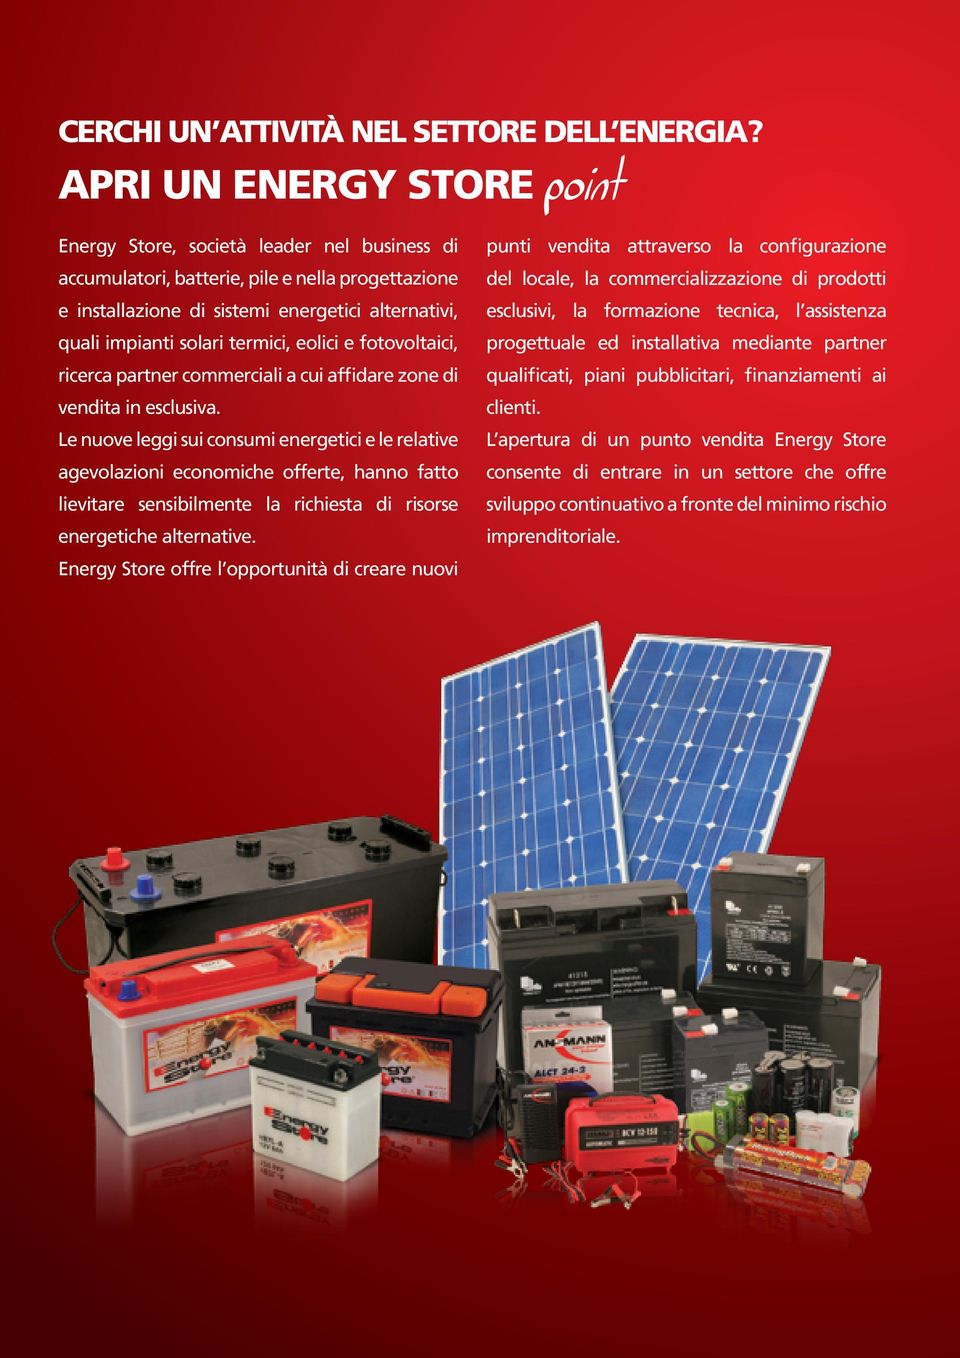 eolici e fotovoltaici, ricerca partner commerciali a cui affidare zone di vendita in esclusiva.